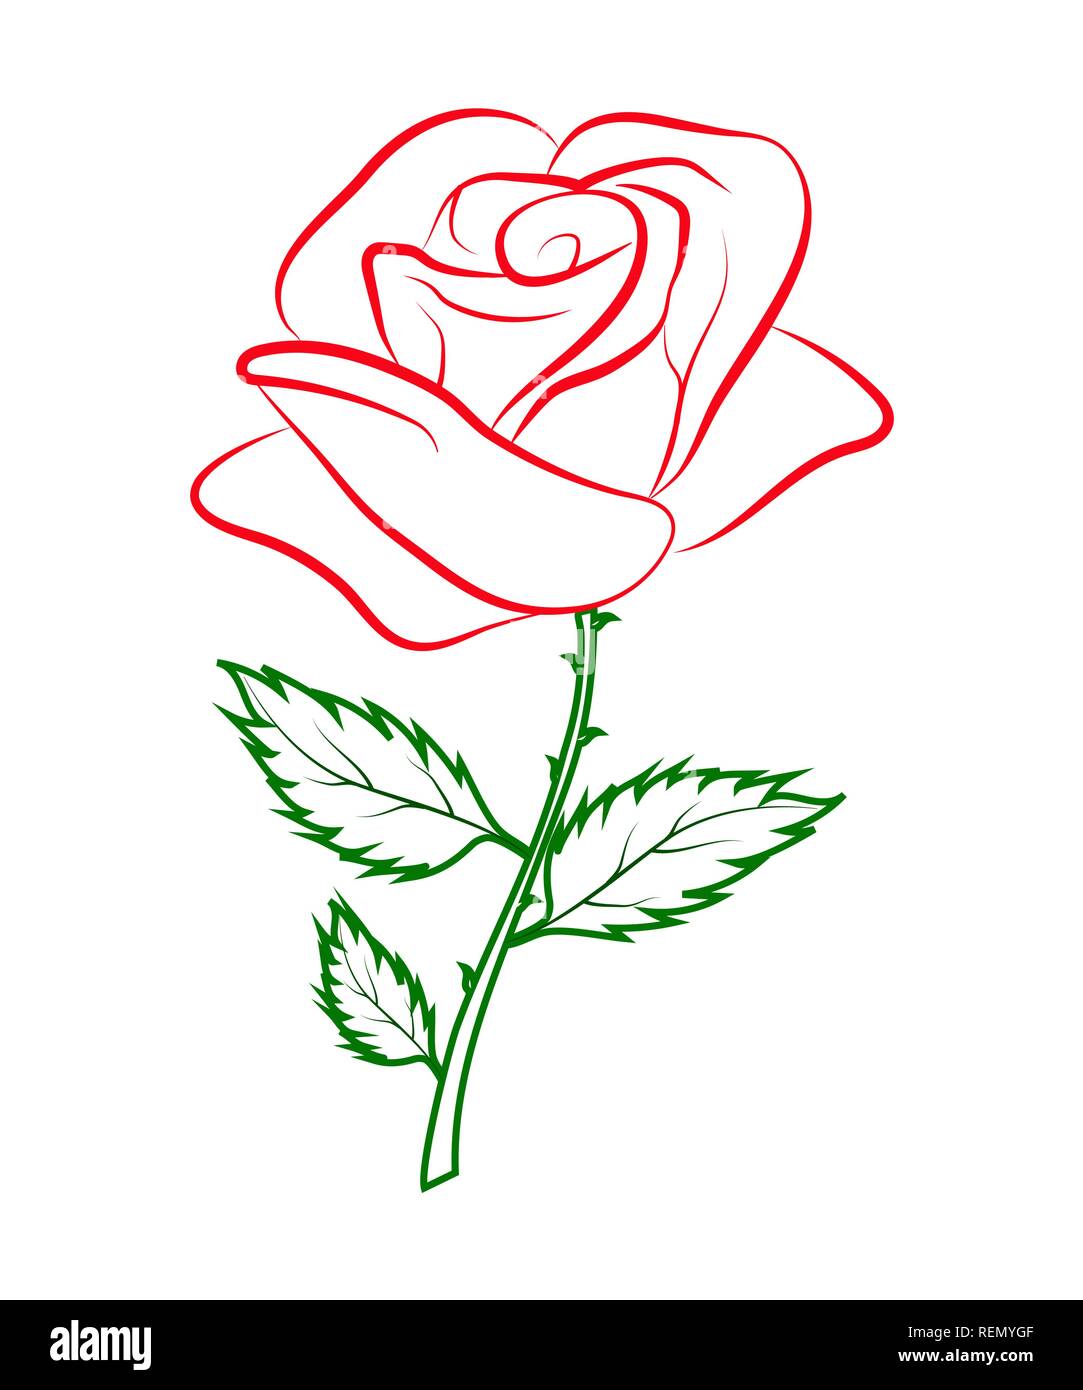 Einfache Gliederung farbige Zeichnung der eine rote Rose auf einem grünen  Stiel Stock-Vektorgrafik - Alamy